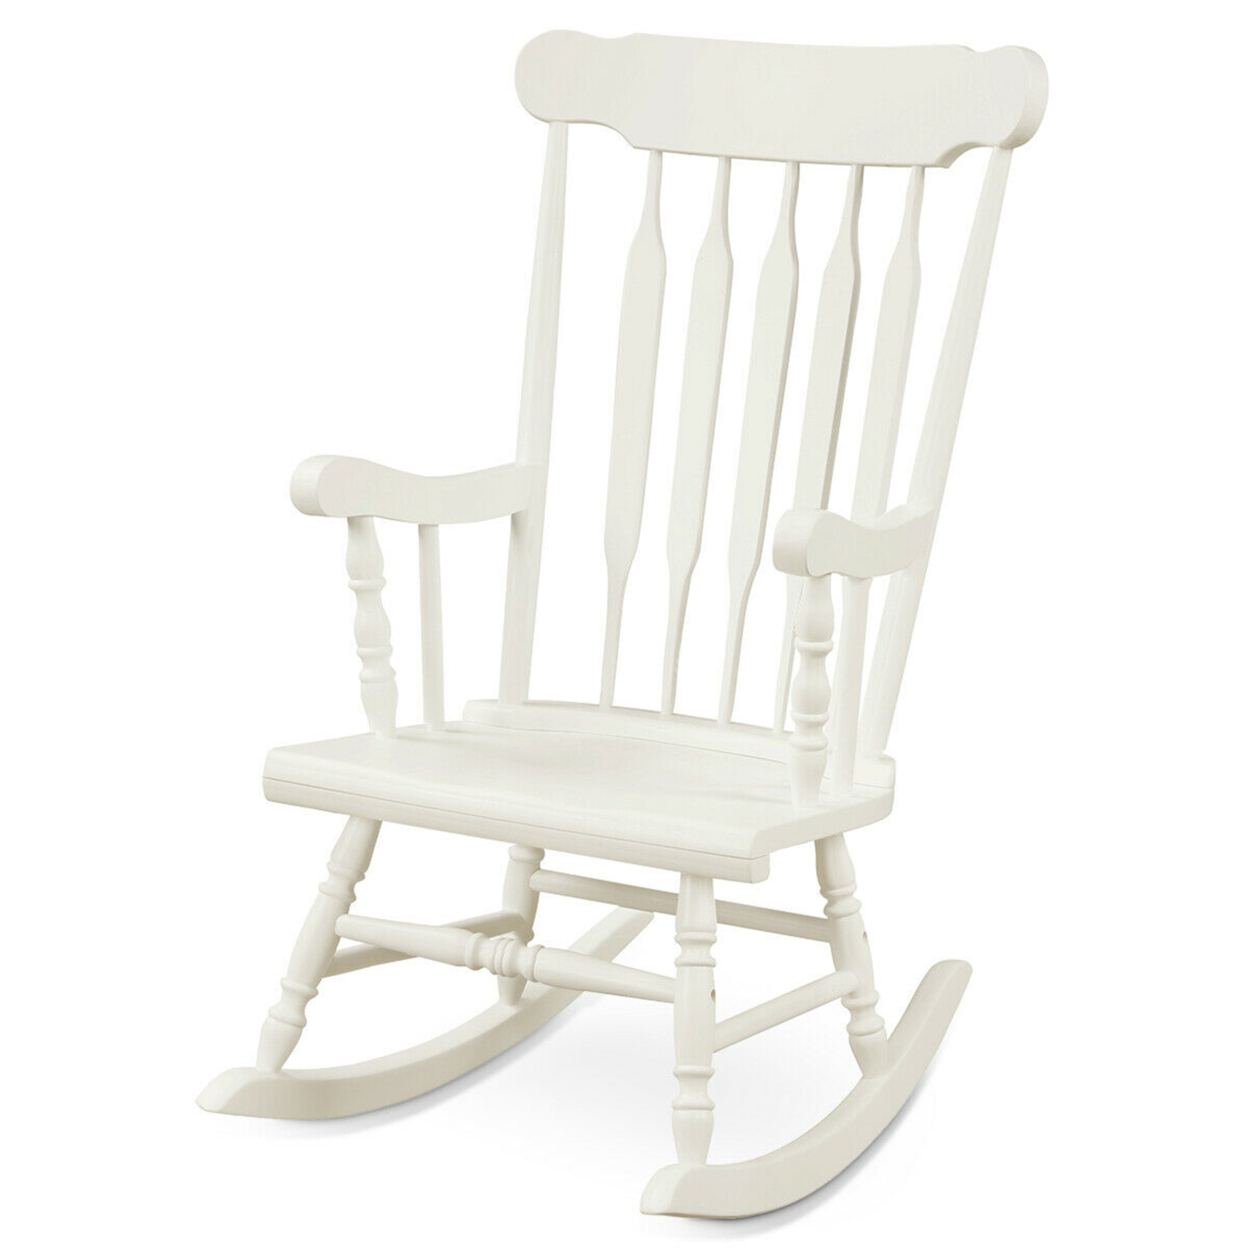 Wooden Rocking Chair Single Rocker Indoor Garden Patio Yard White